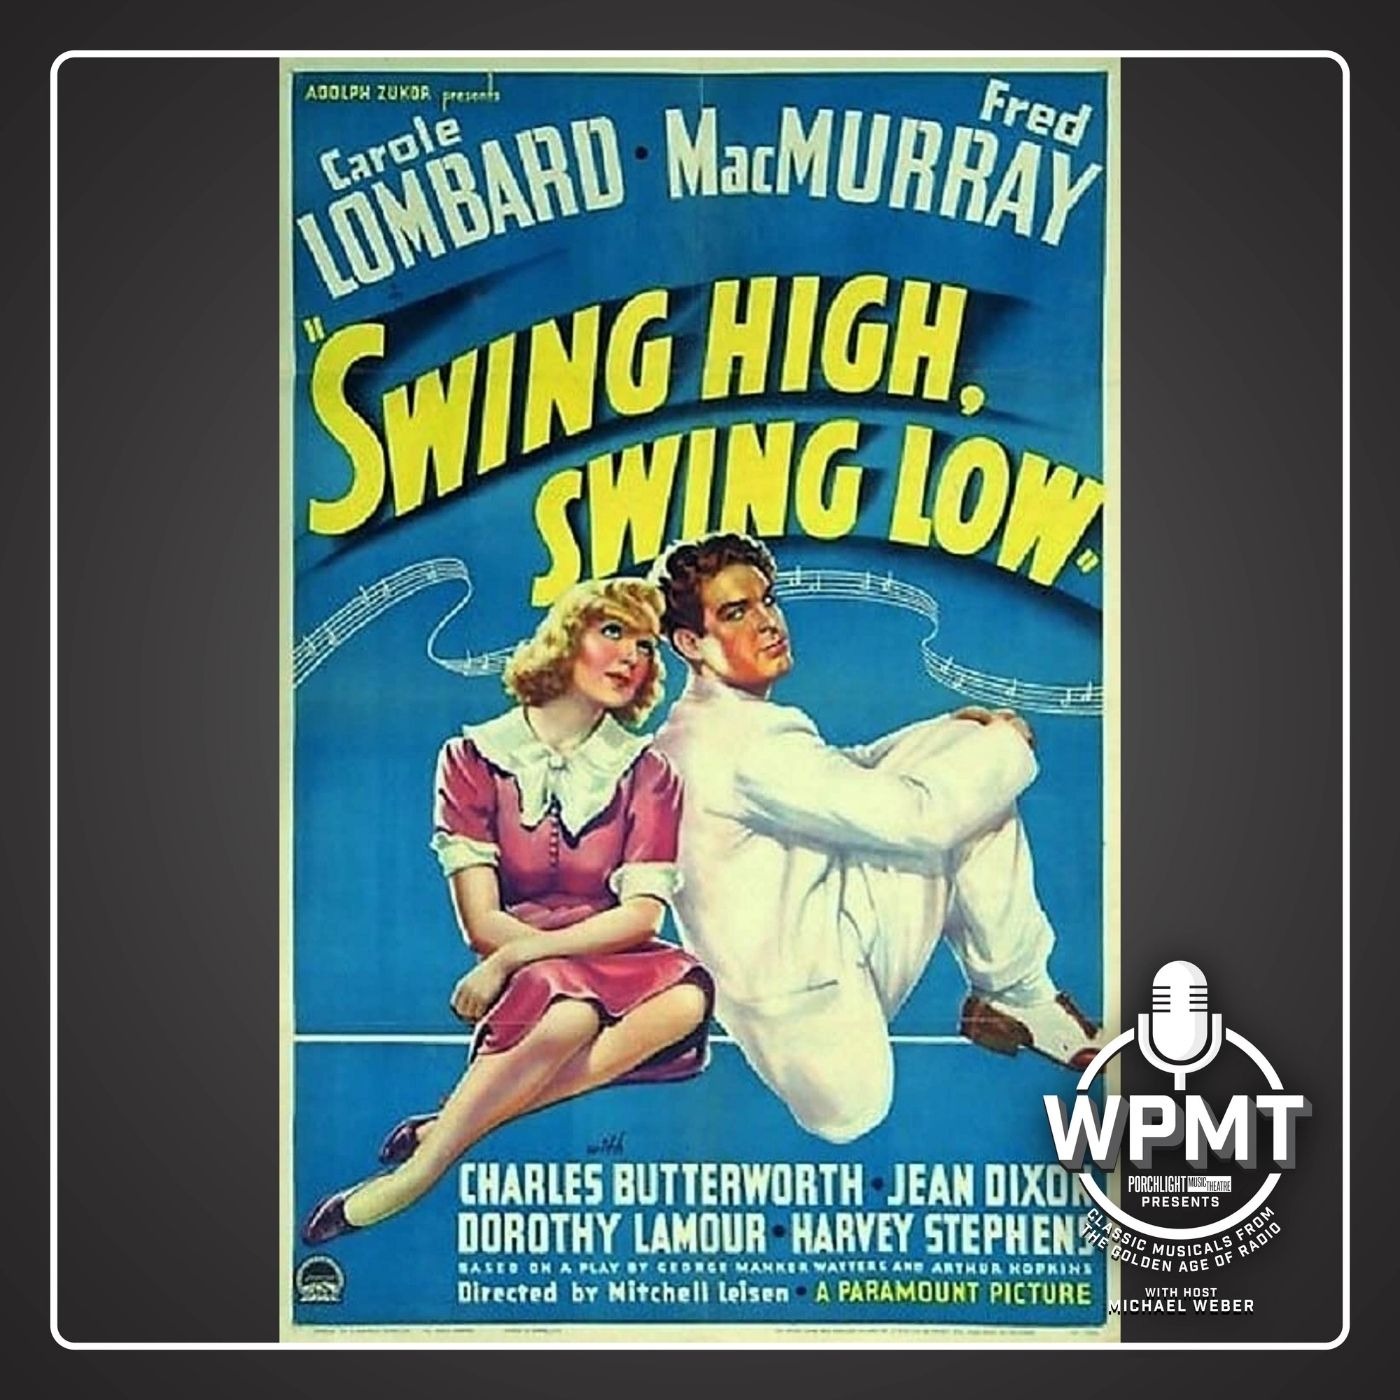 WPMT #61: Swing High Swing Low